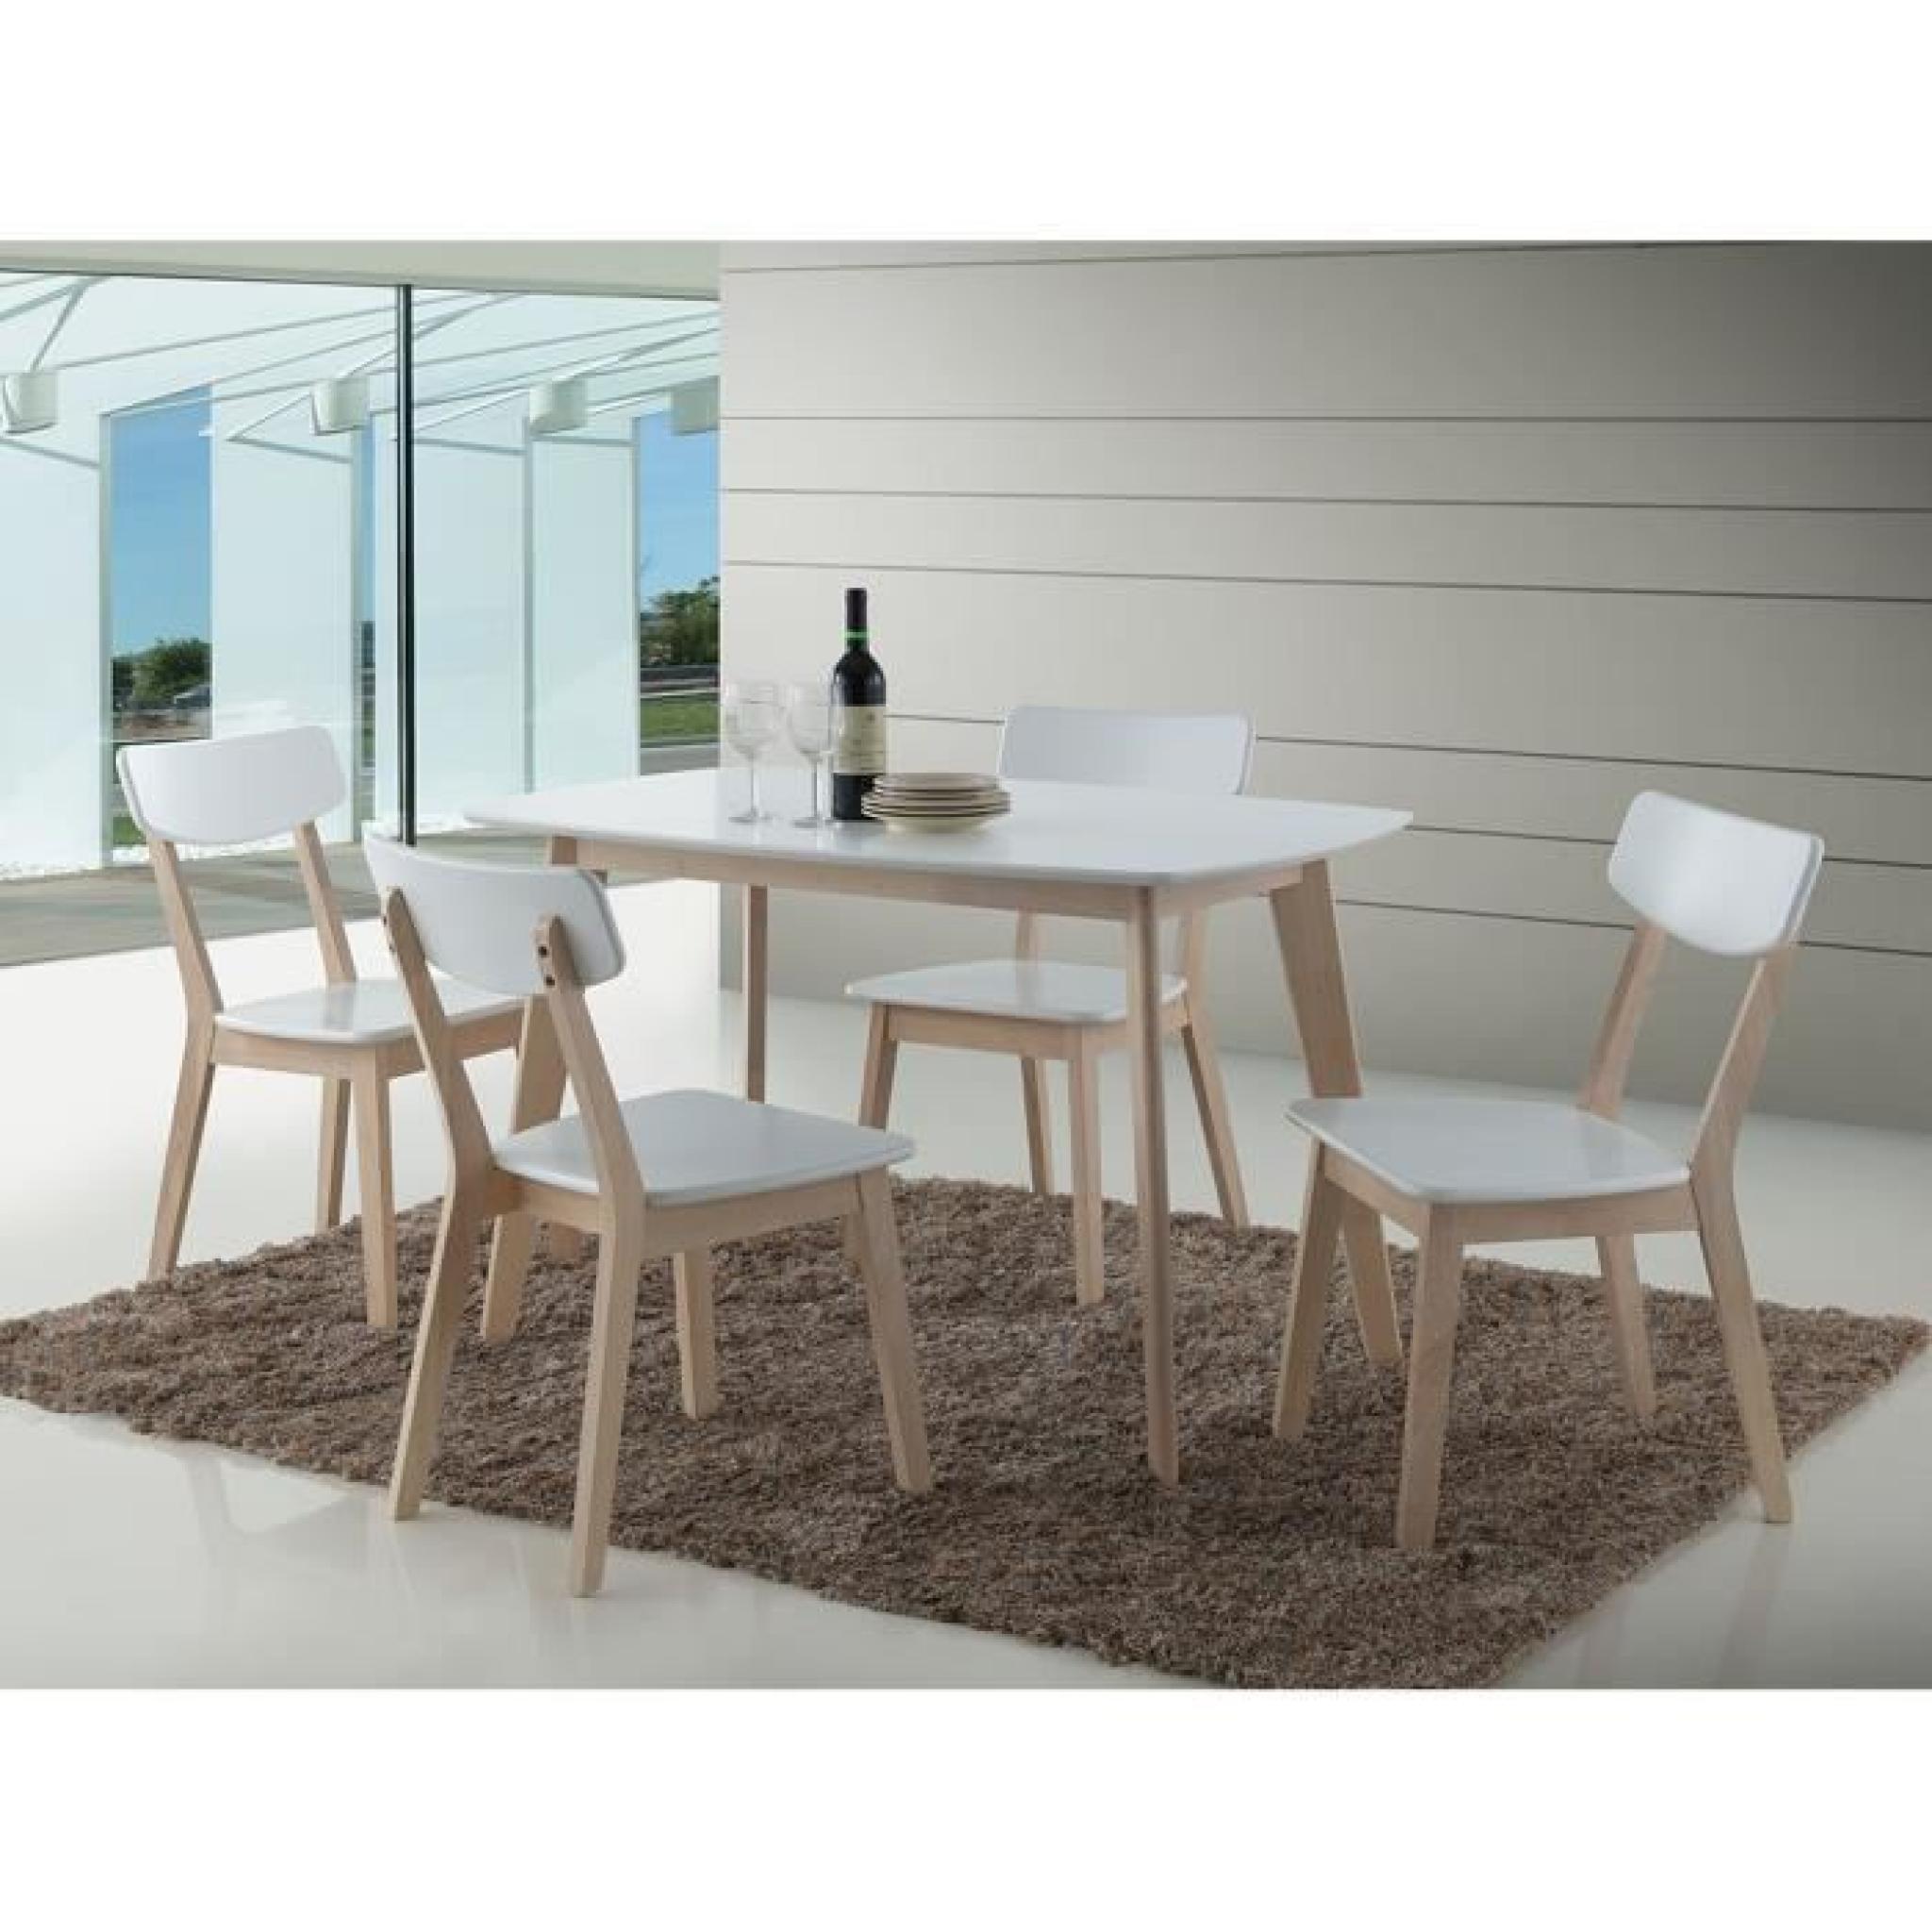 Ensemble OSLO blanc. Table de cuisine et salle à manger design. Set composé d'une table et de 4 chaises ultra tendance. 